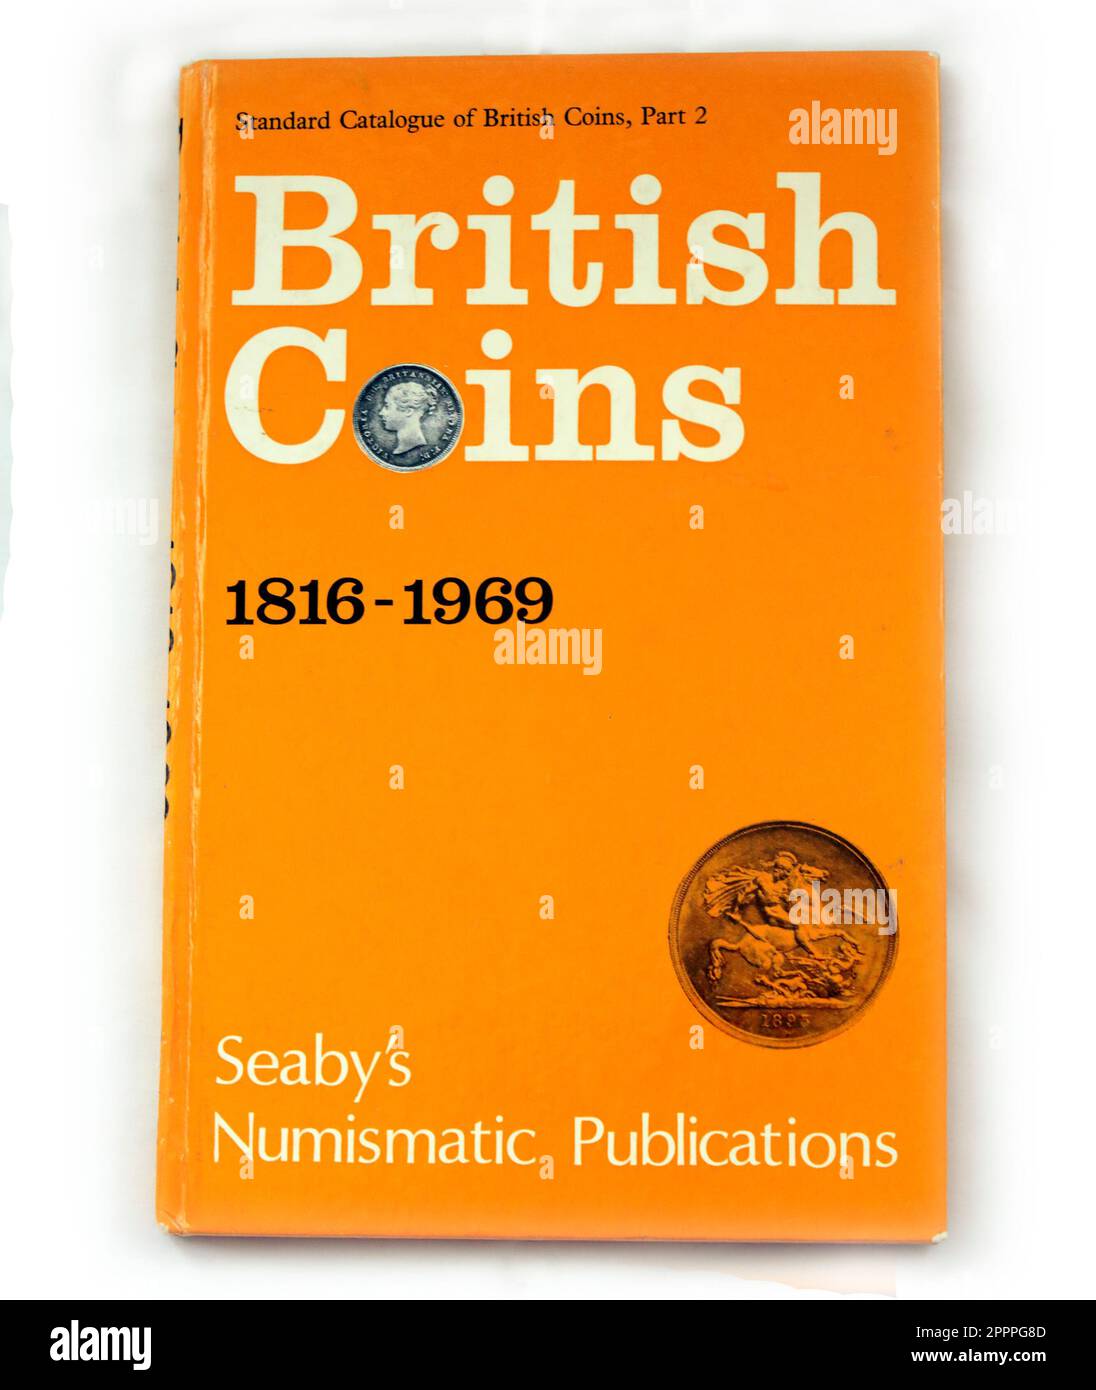 Livre Hardback - pièces britanniques 1816 - 1969. Publications numismatiques de Seaby. Catalogue standard des pièces britanniques partie 2 Banque D'Images